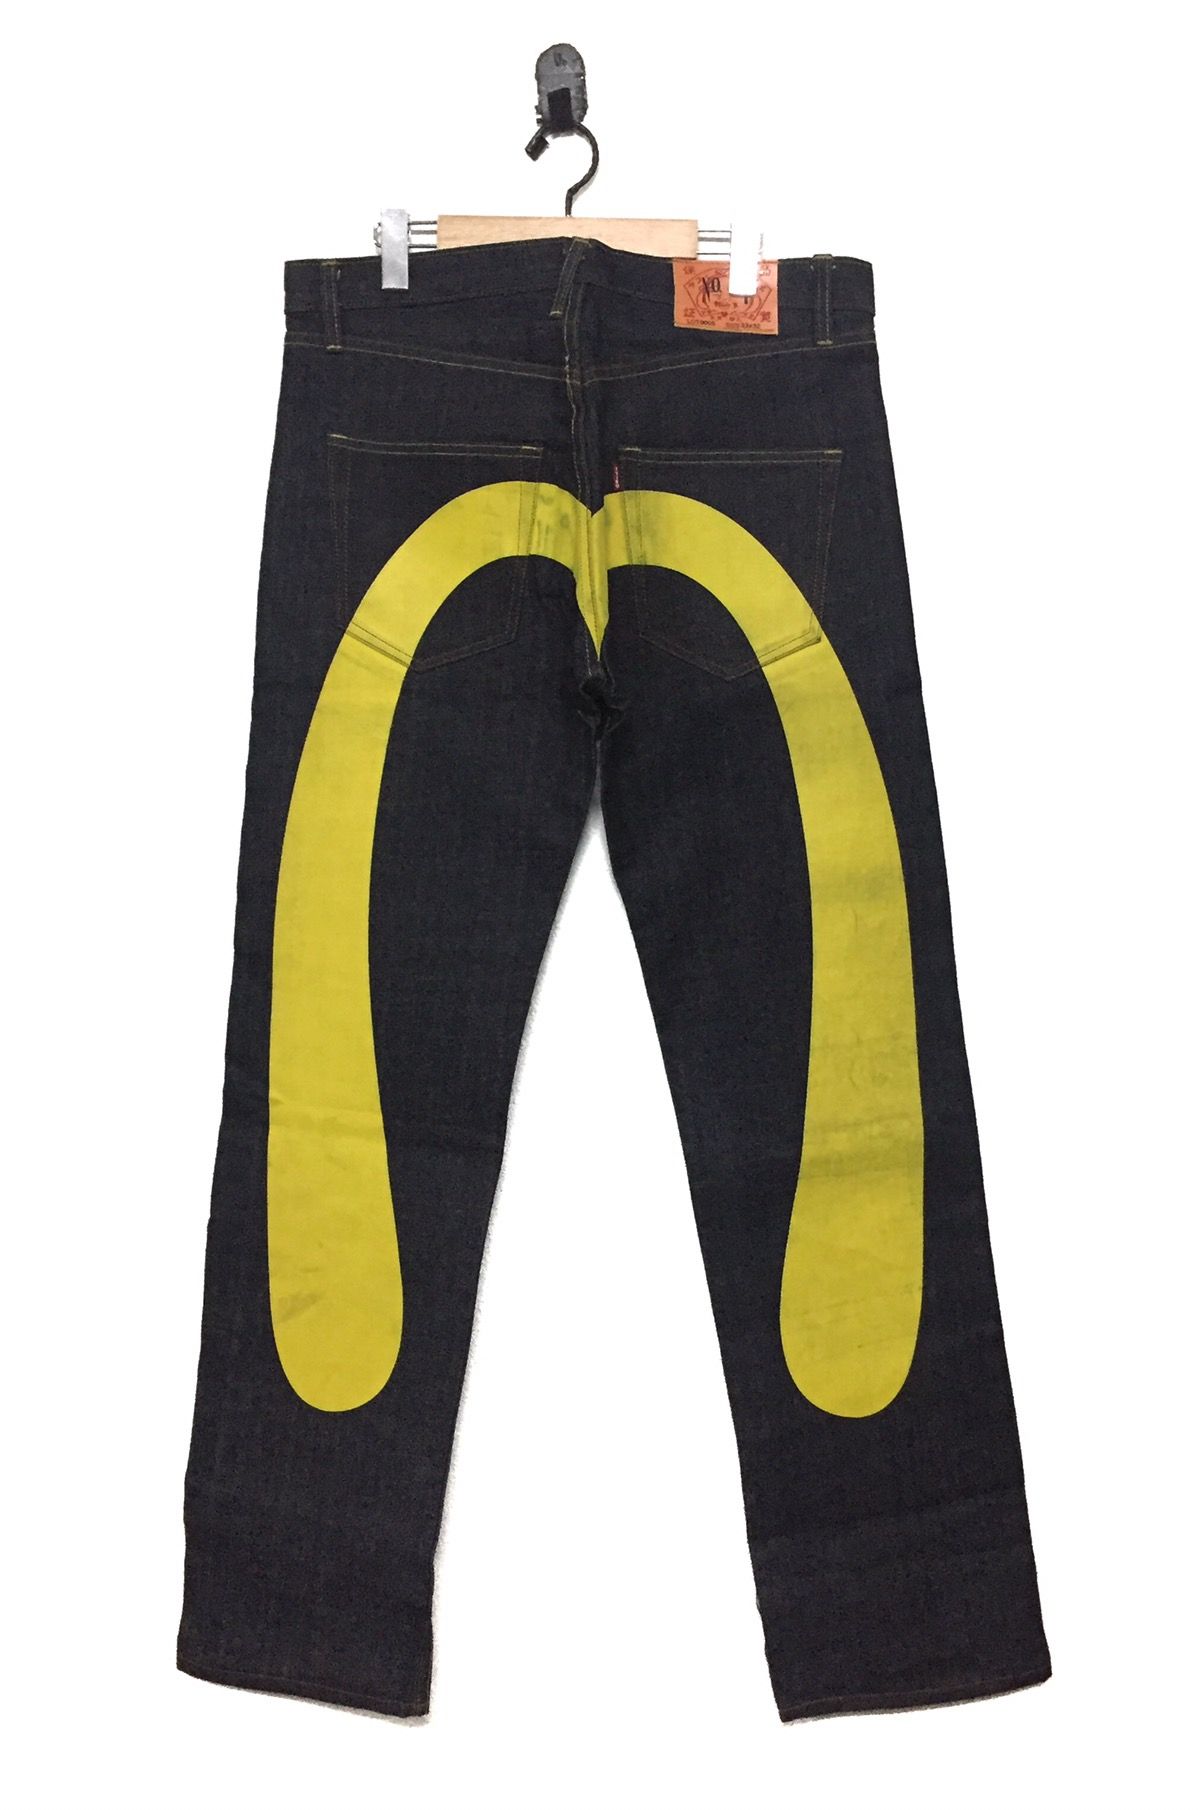 Evisu Evisu Yellow Daicock Jeans Big Logo Size US 33 - 1 Preview